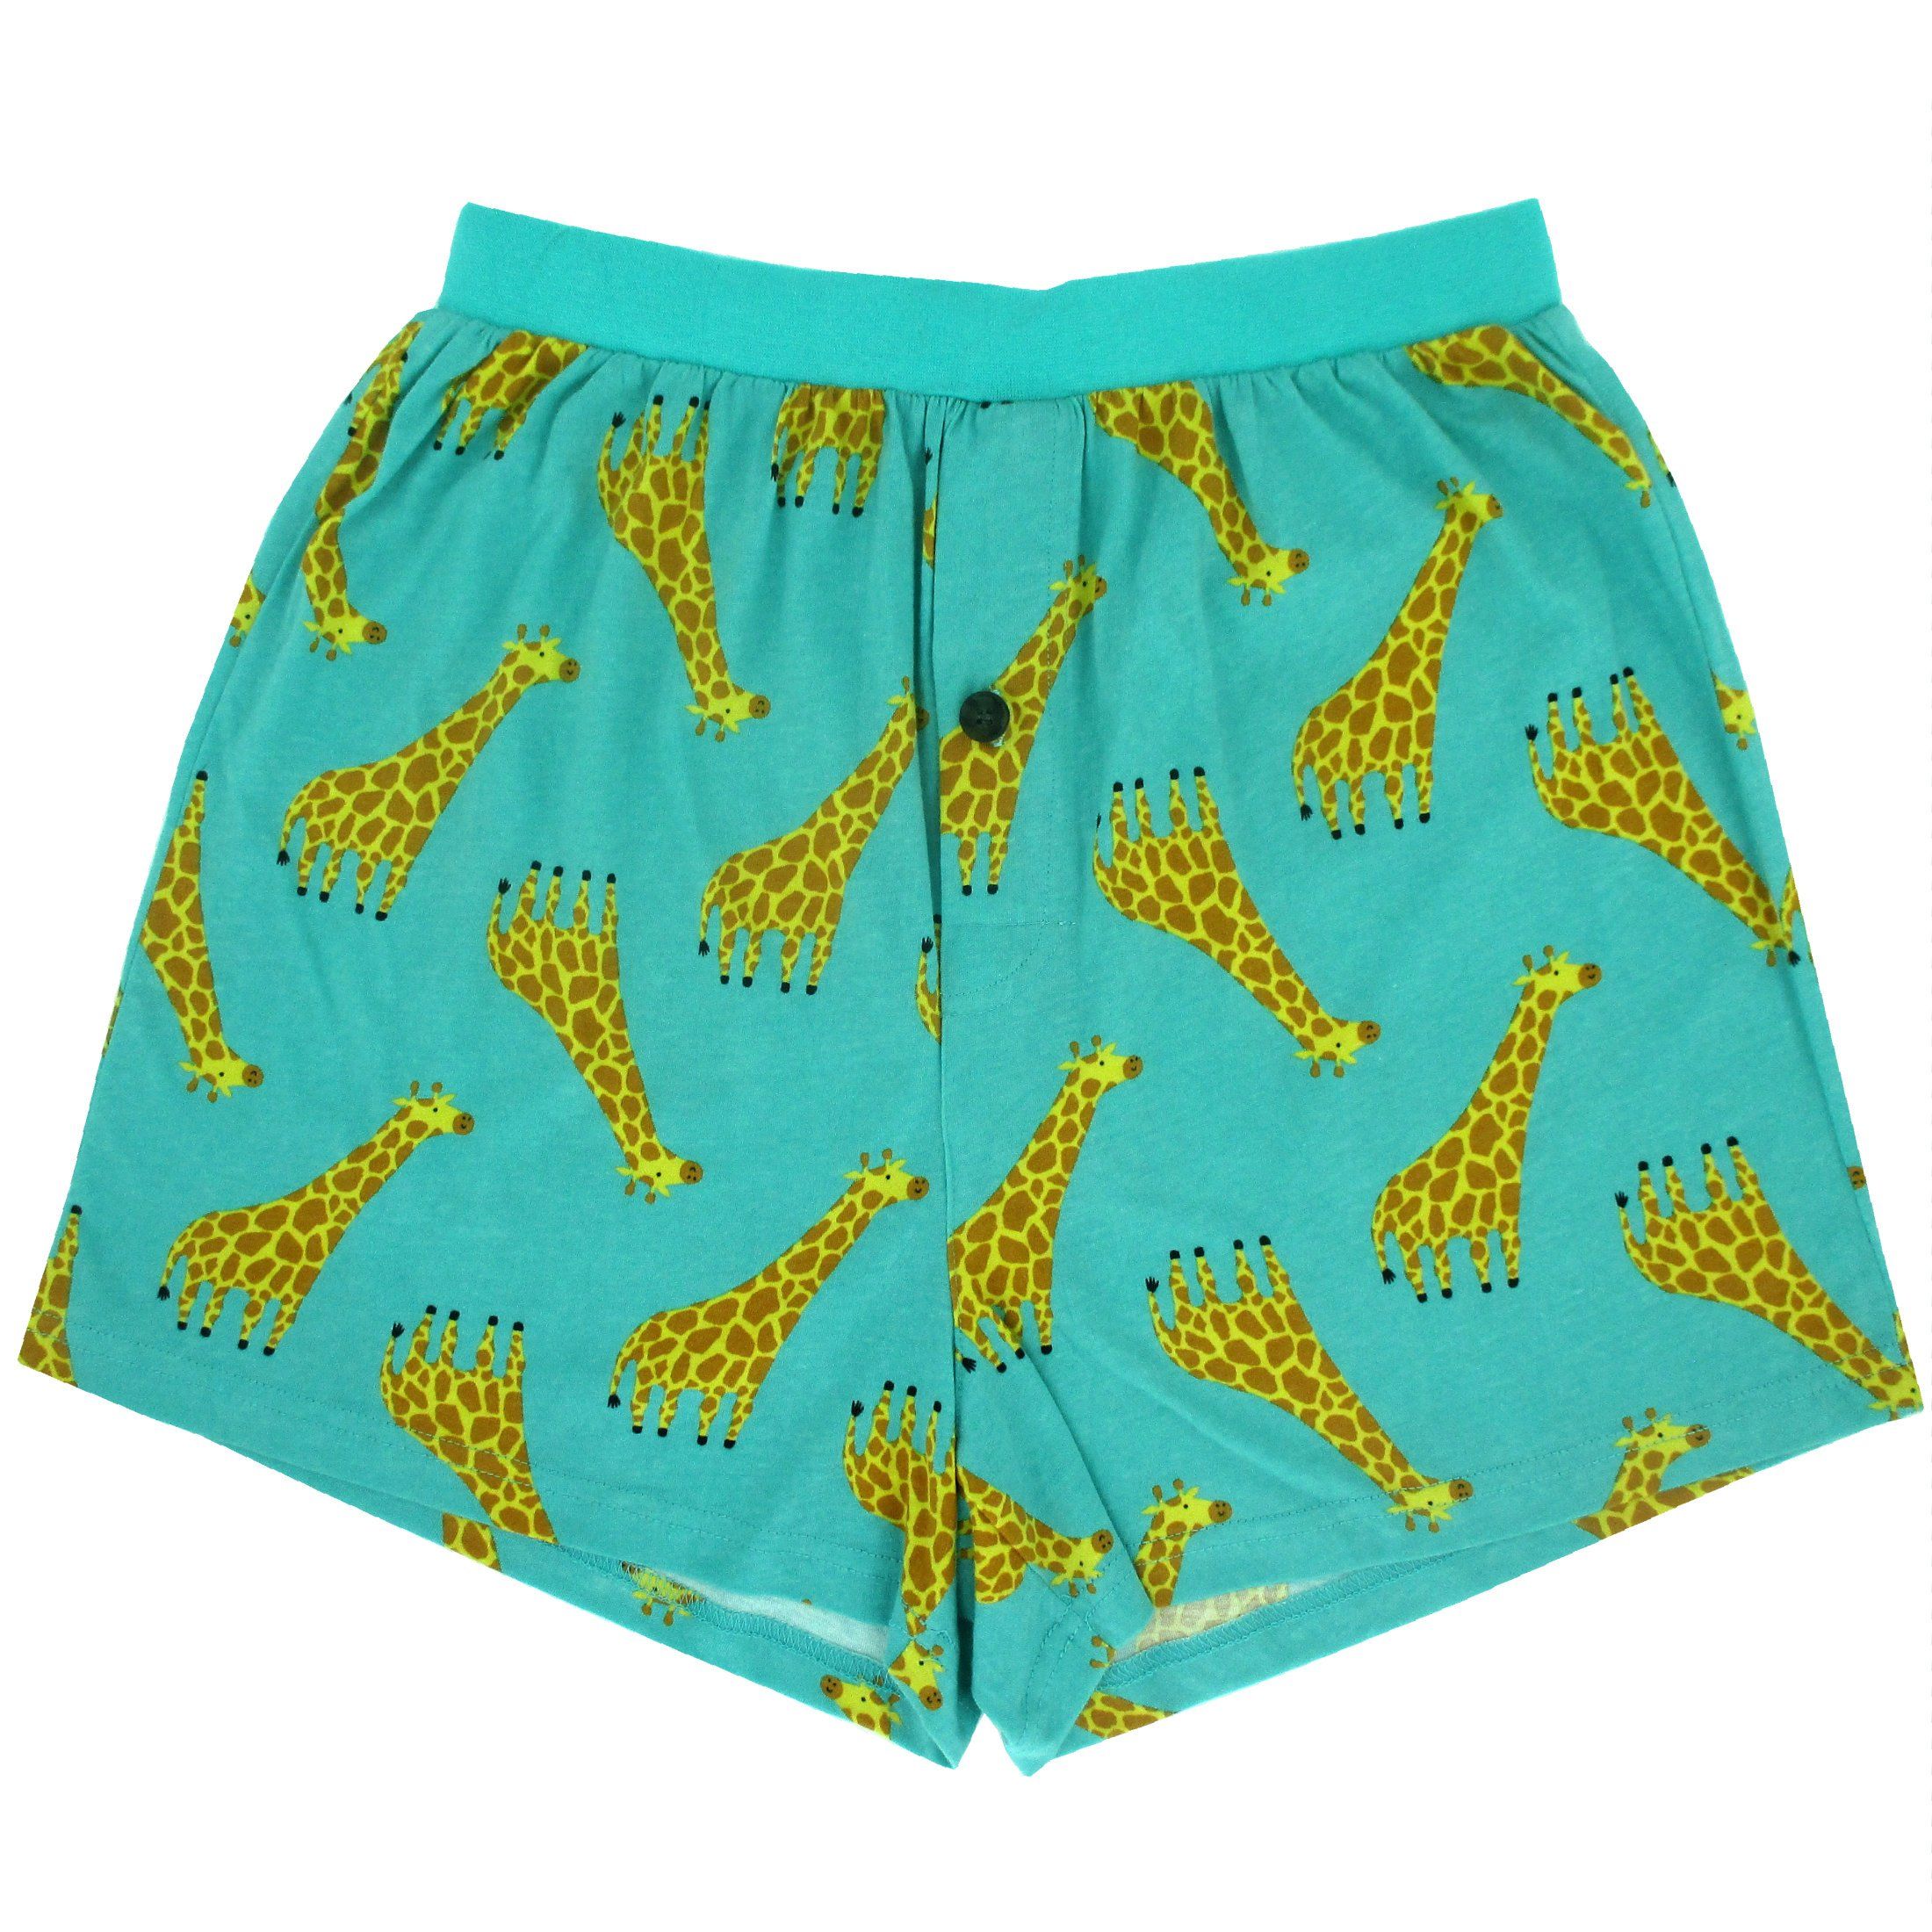 Cute Cartoon Giraffe All Over Print Cotton Jersey Knit Boxer Shorts